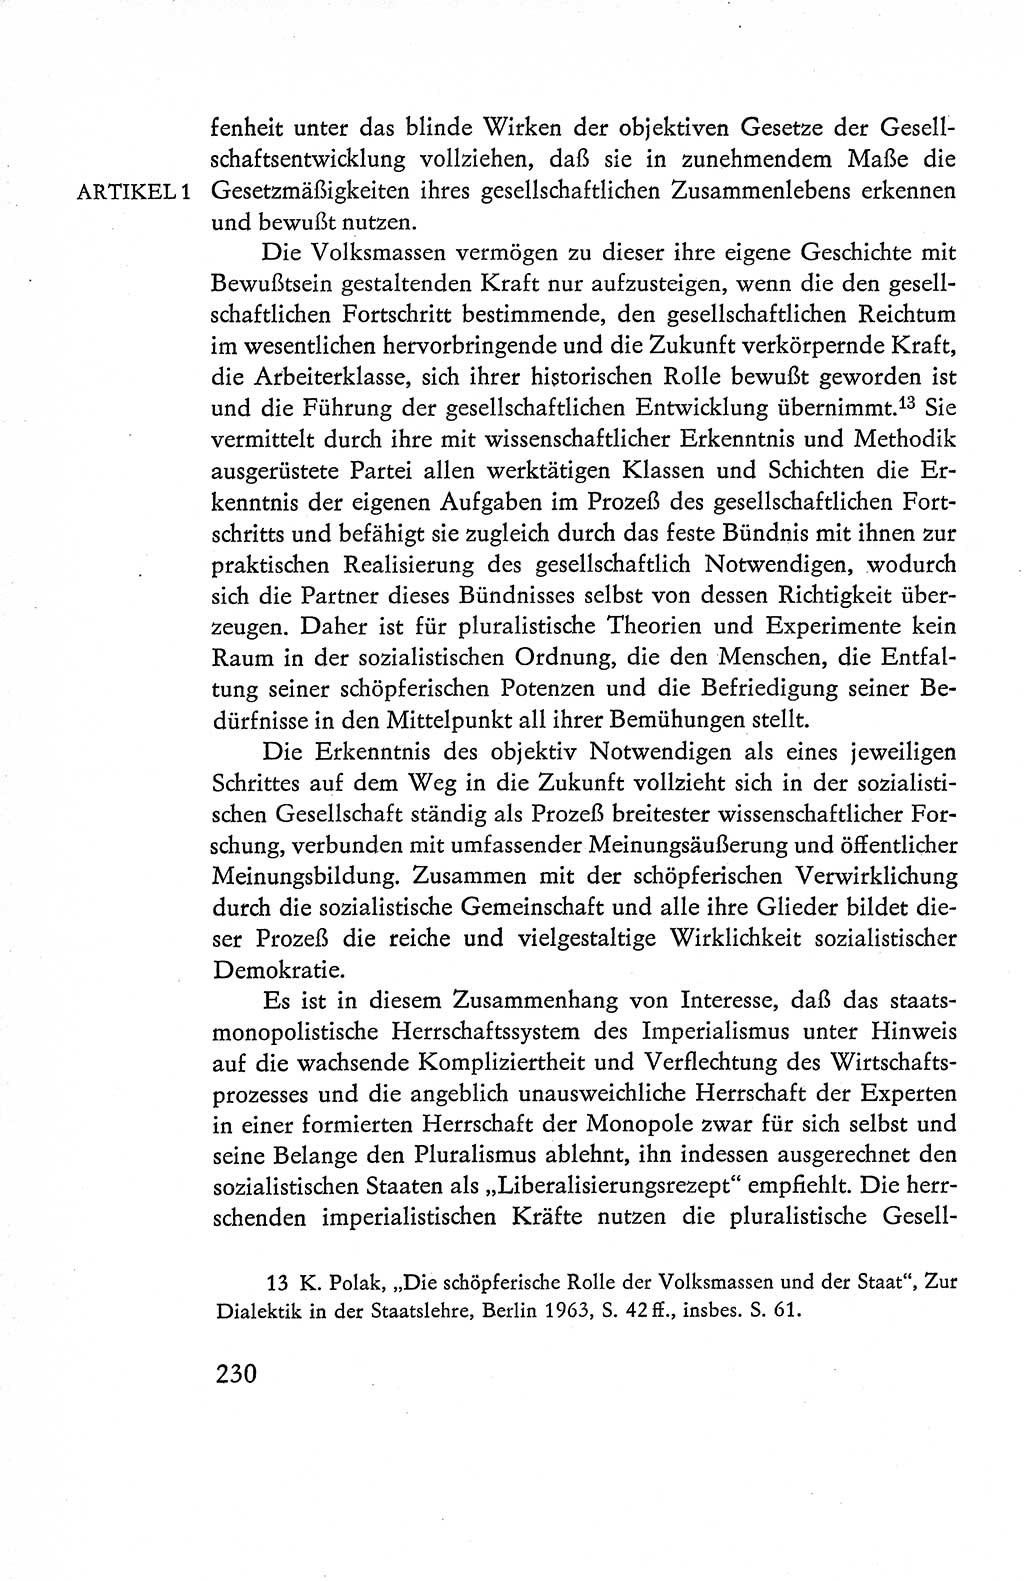 Verfassung der Deutschen Demokratischen Republik (DDR), Dokumente, Kommentar 1969, Band 1, Seite 230 (Verf. DDR Dok. Komm. 1969, Bd. 1, S. 230)